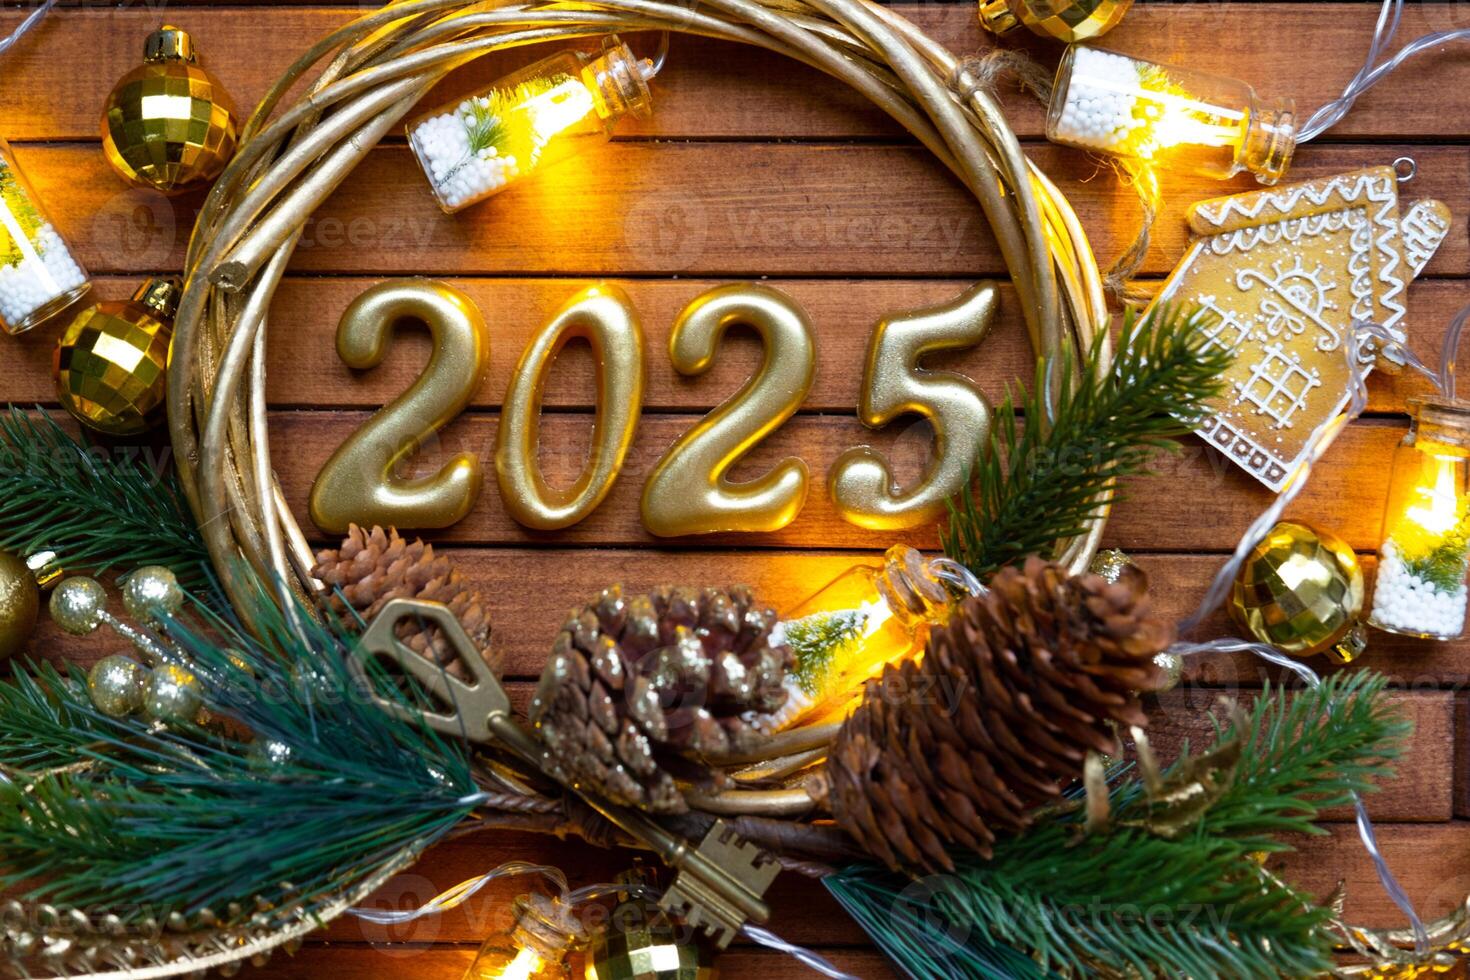 Novo ano casa chave com chaveiro chalé em festivo Castanho de madeira fundo com número 2025 dentro guirlanda, luzes do guirlandas. comprar, construção, realocação, hipoteca, seguro foto